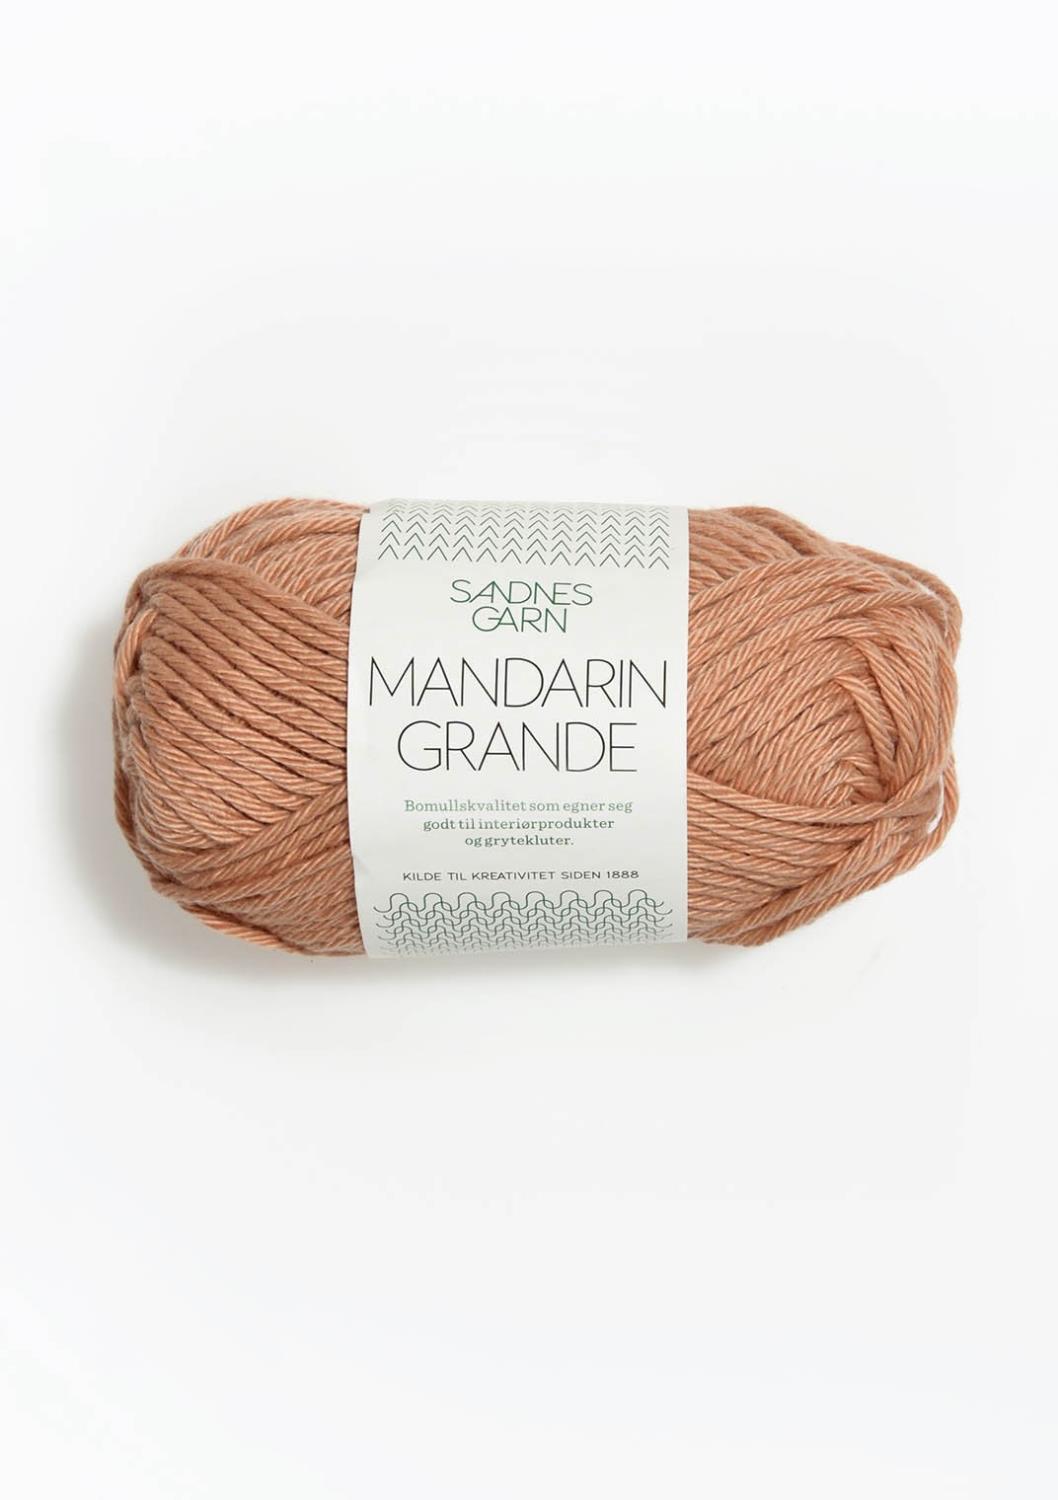 Mandarin Grande Sandnes 3532 - Nude